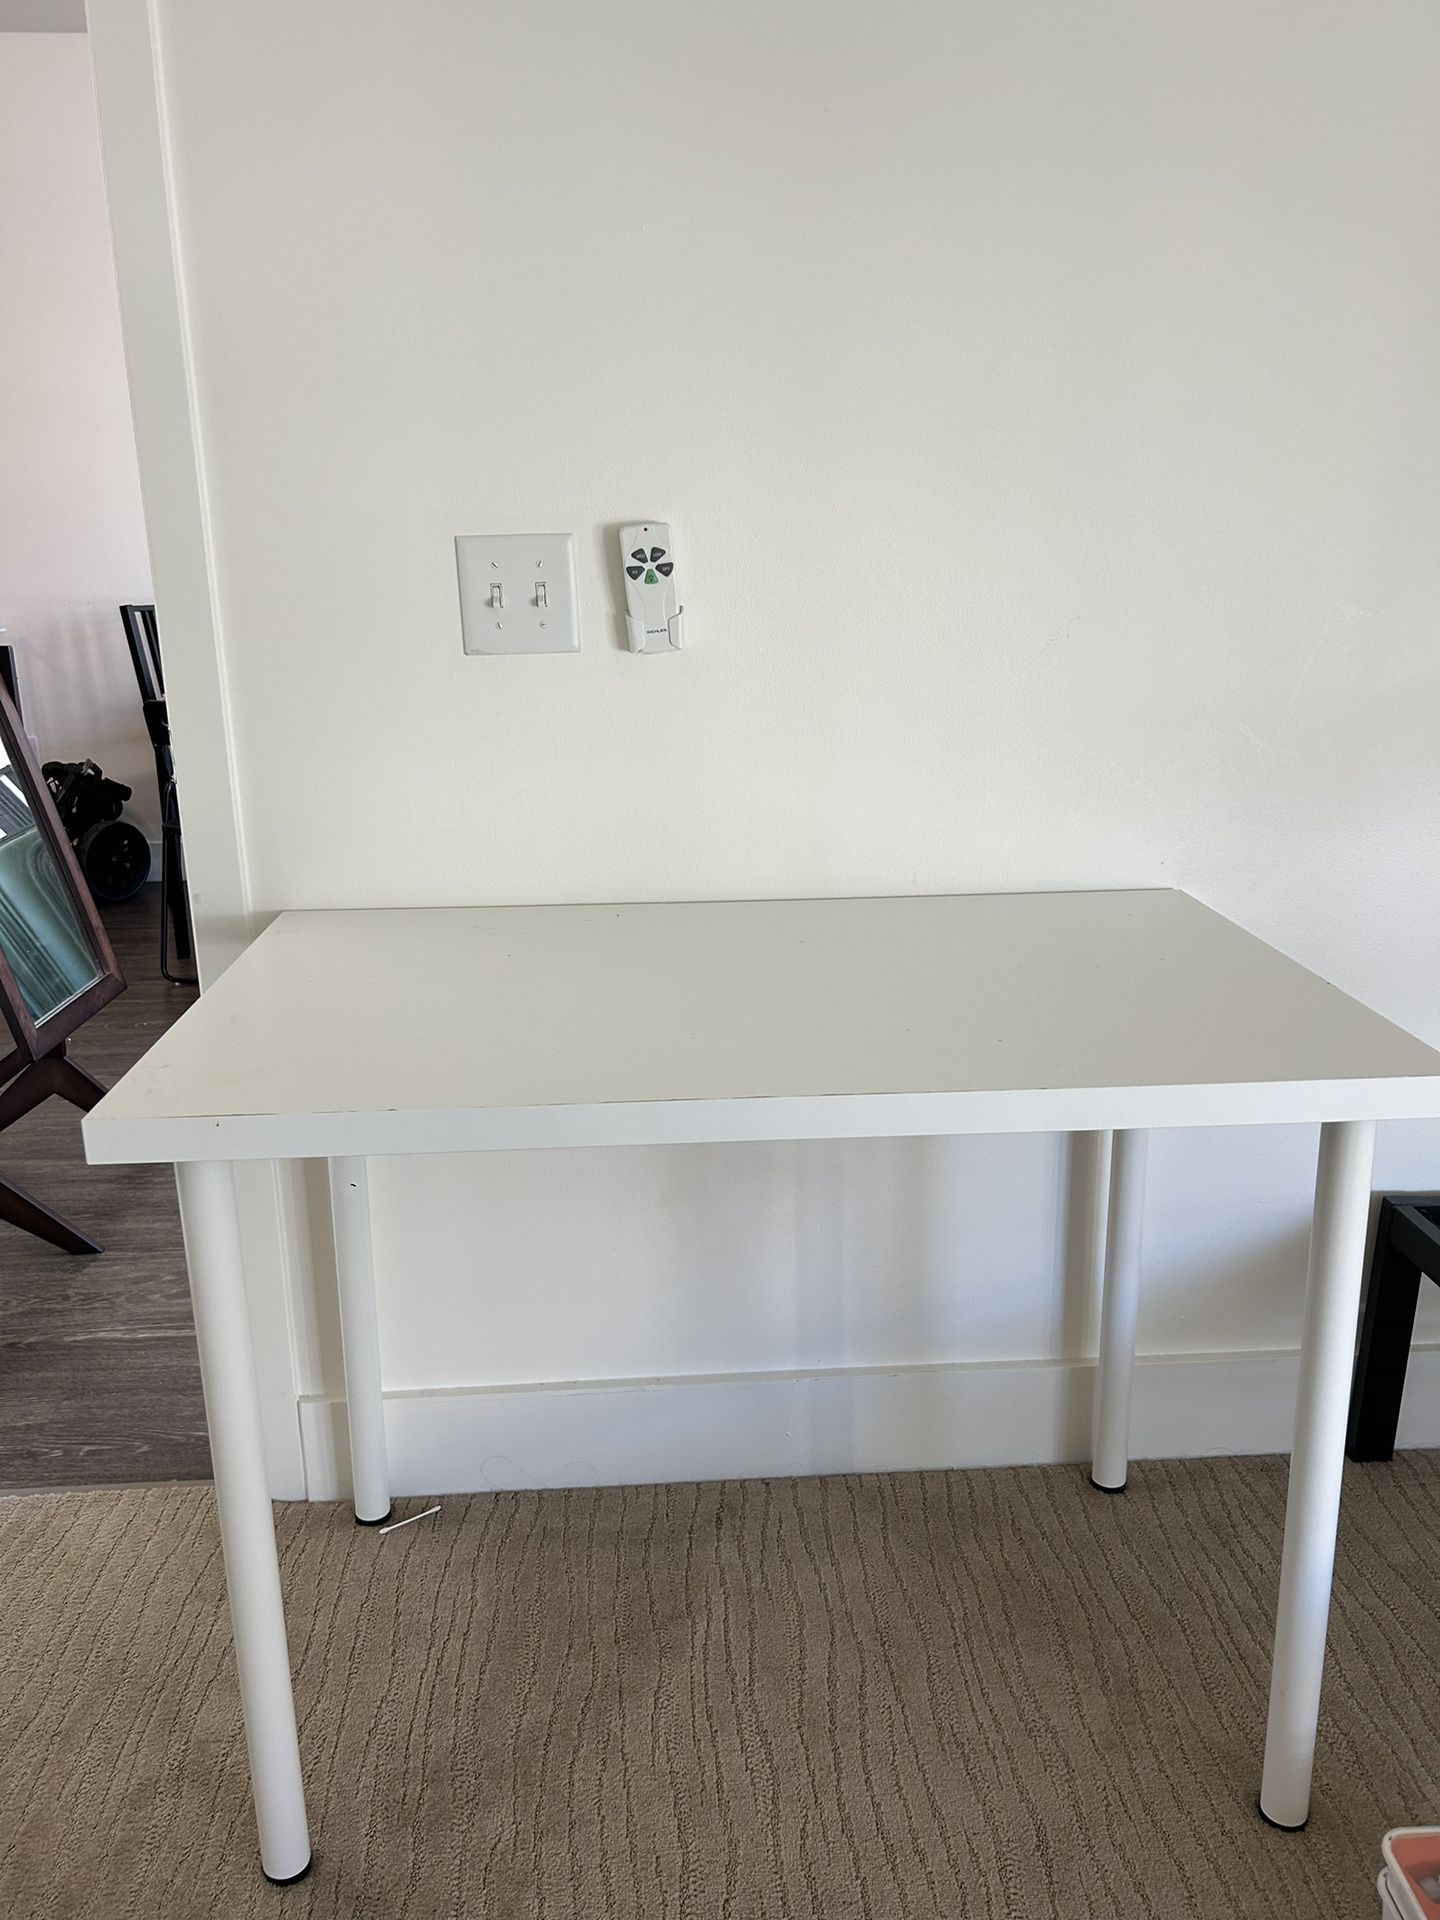 Free Ikea Desk